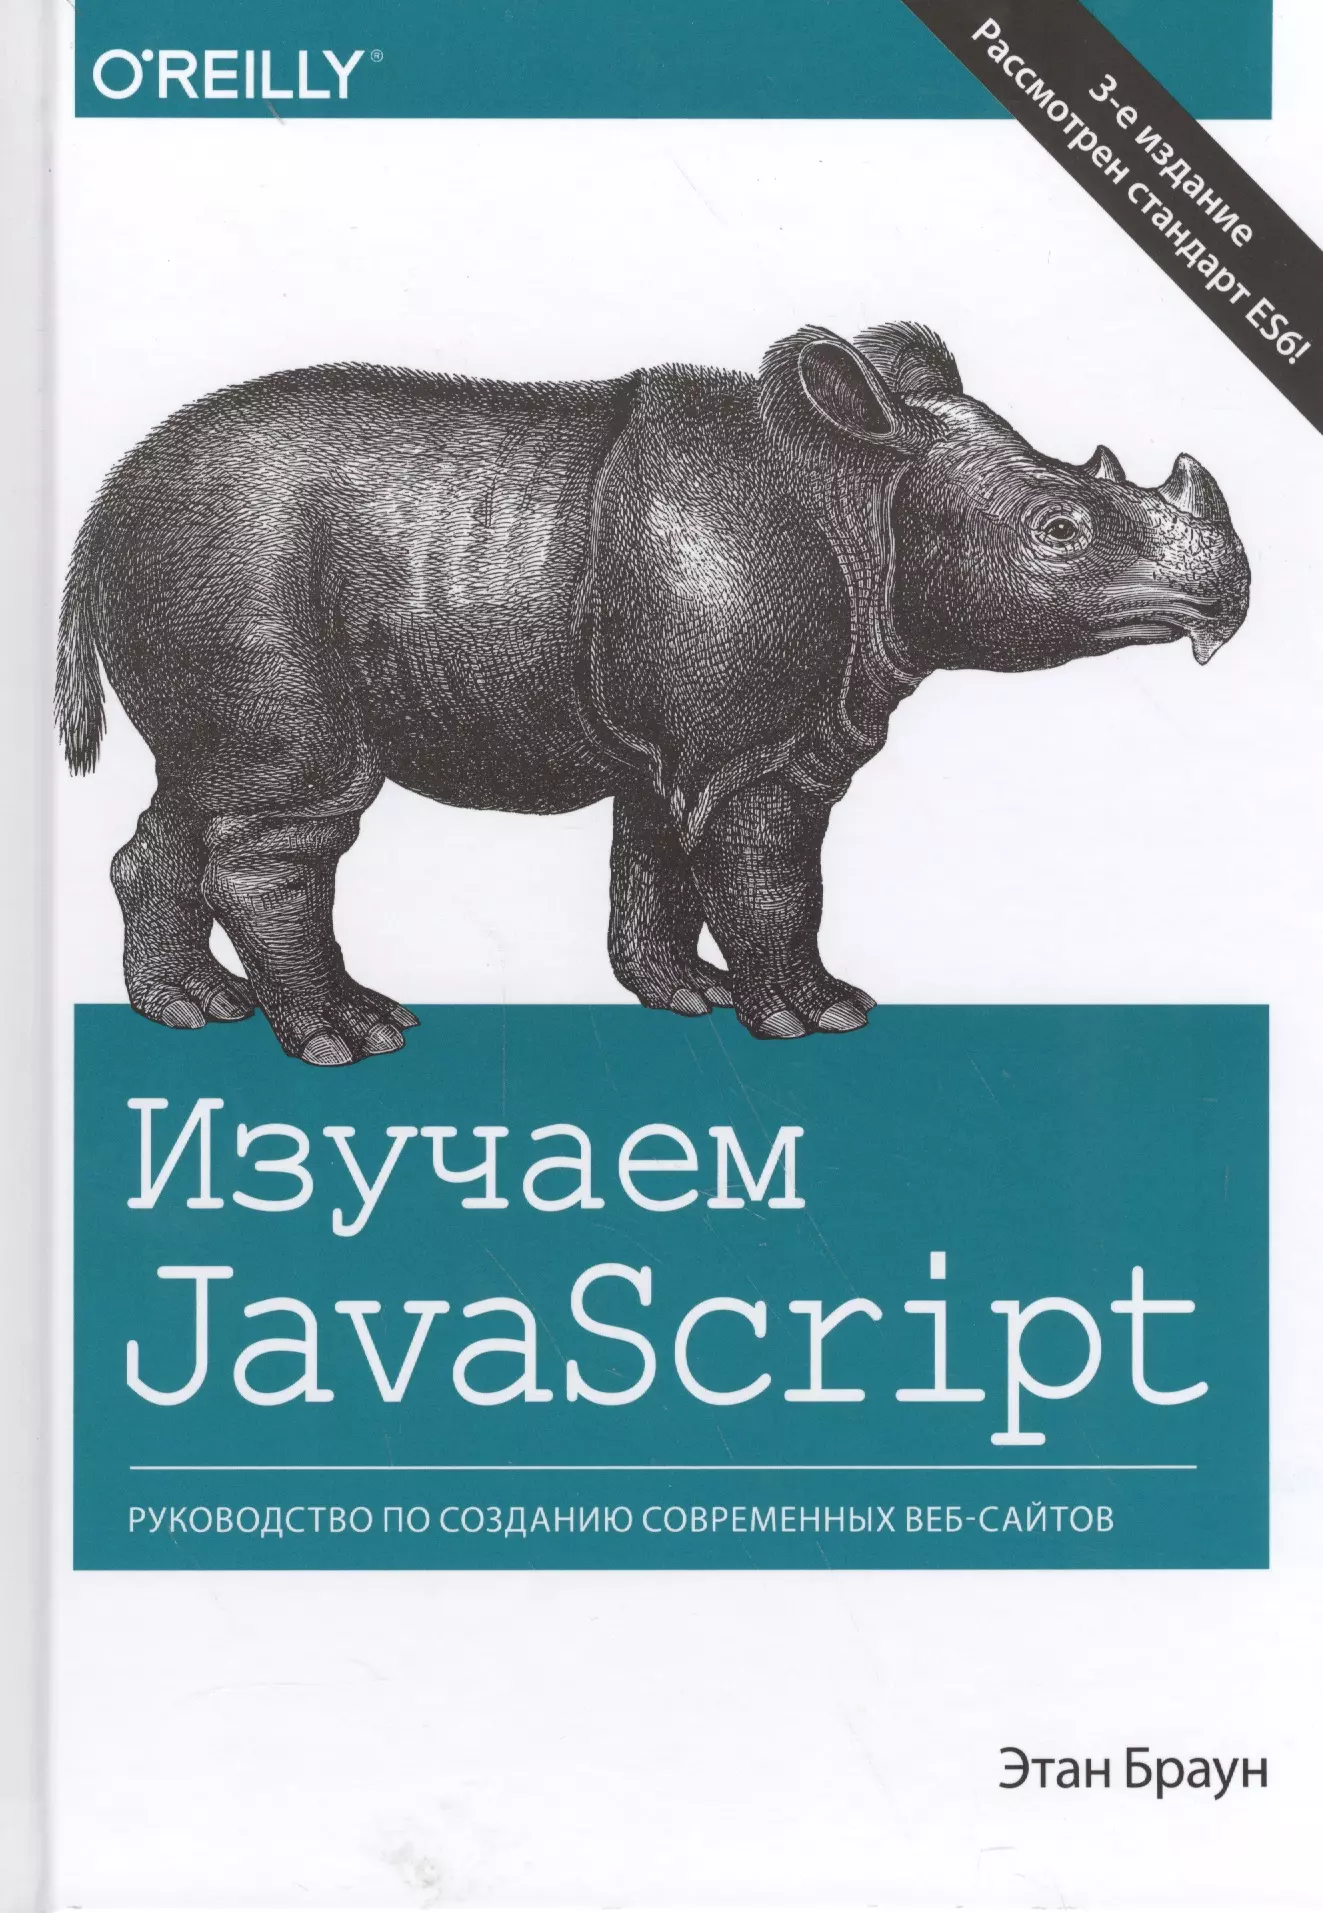 Изучаем JavaScript: руководство по созданию современных веб-сайтов, 3-е издание браун э изучаем javascript руководство по созданию современных веб сайтов